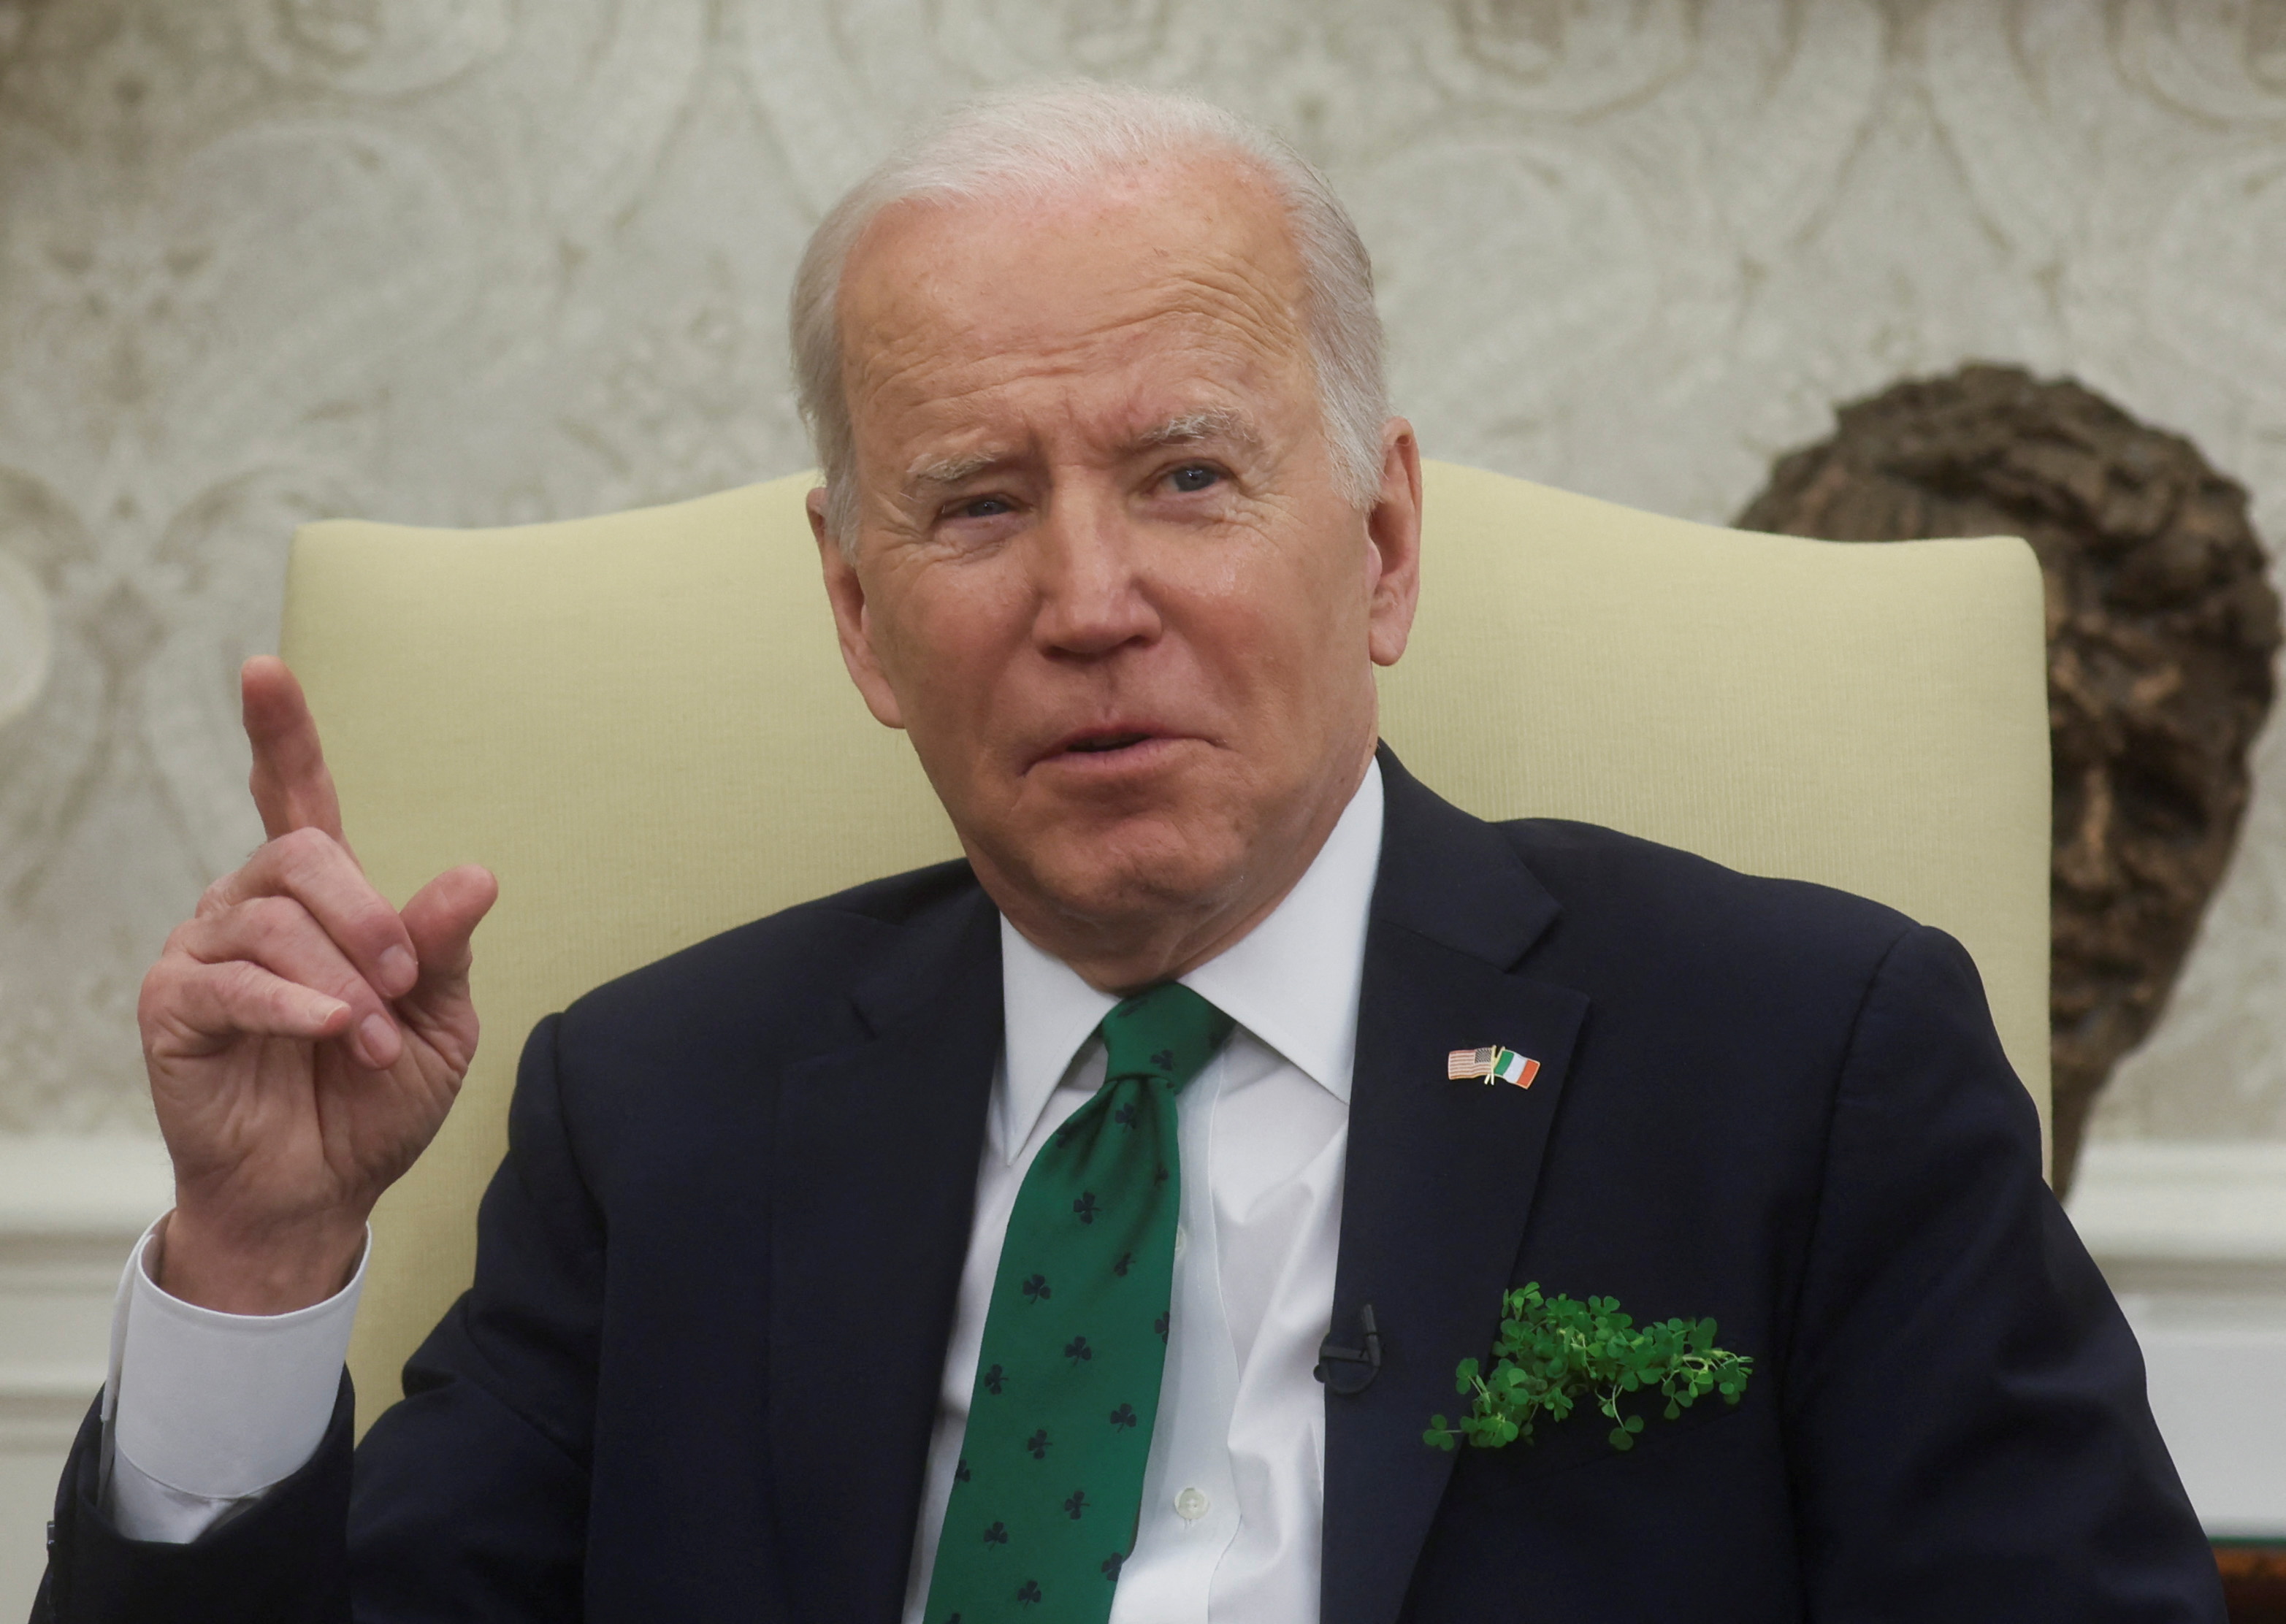 Joe Biden assure que la Russie envisage de frapper l'Ukraine avec des armes chimiques et biologiques